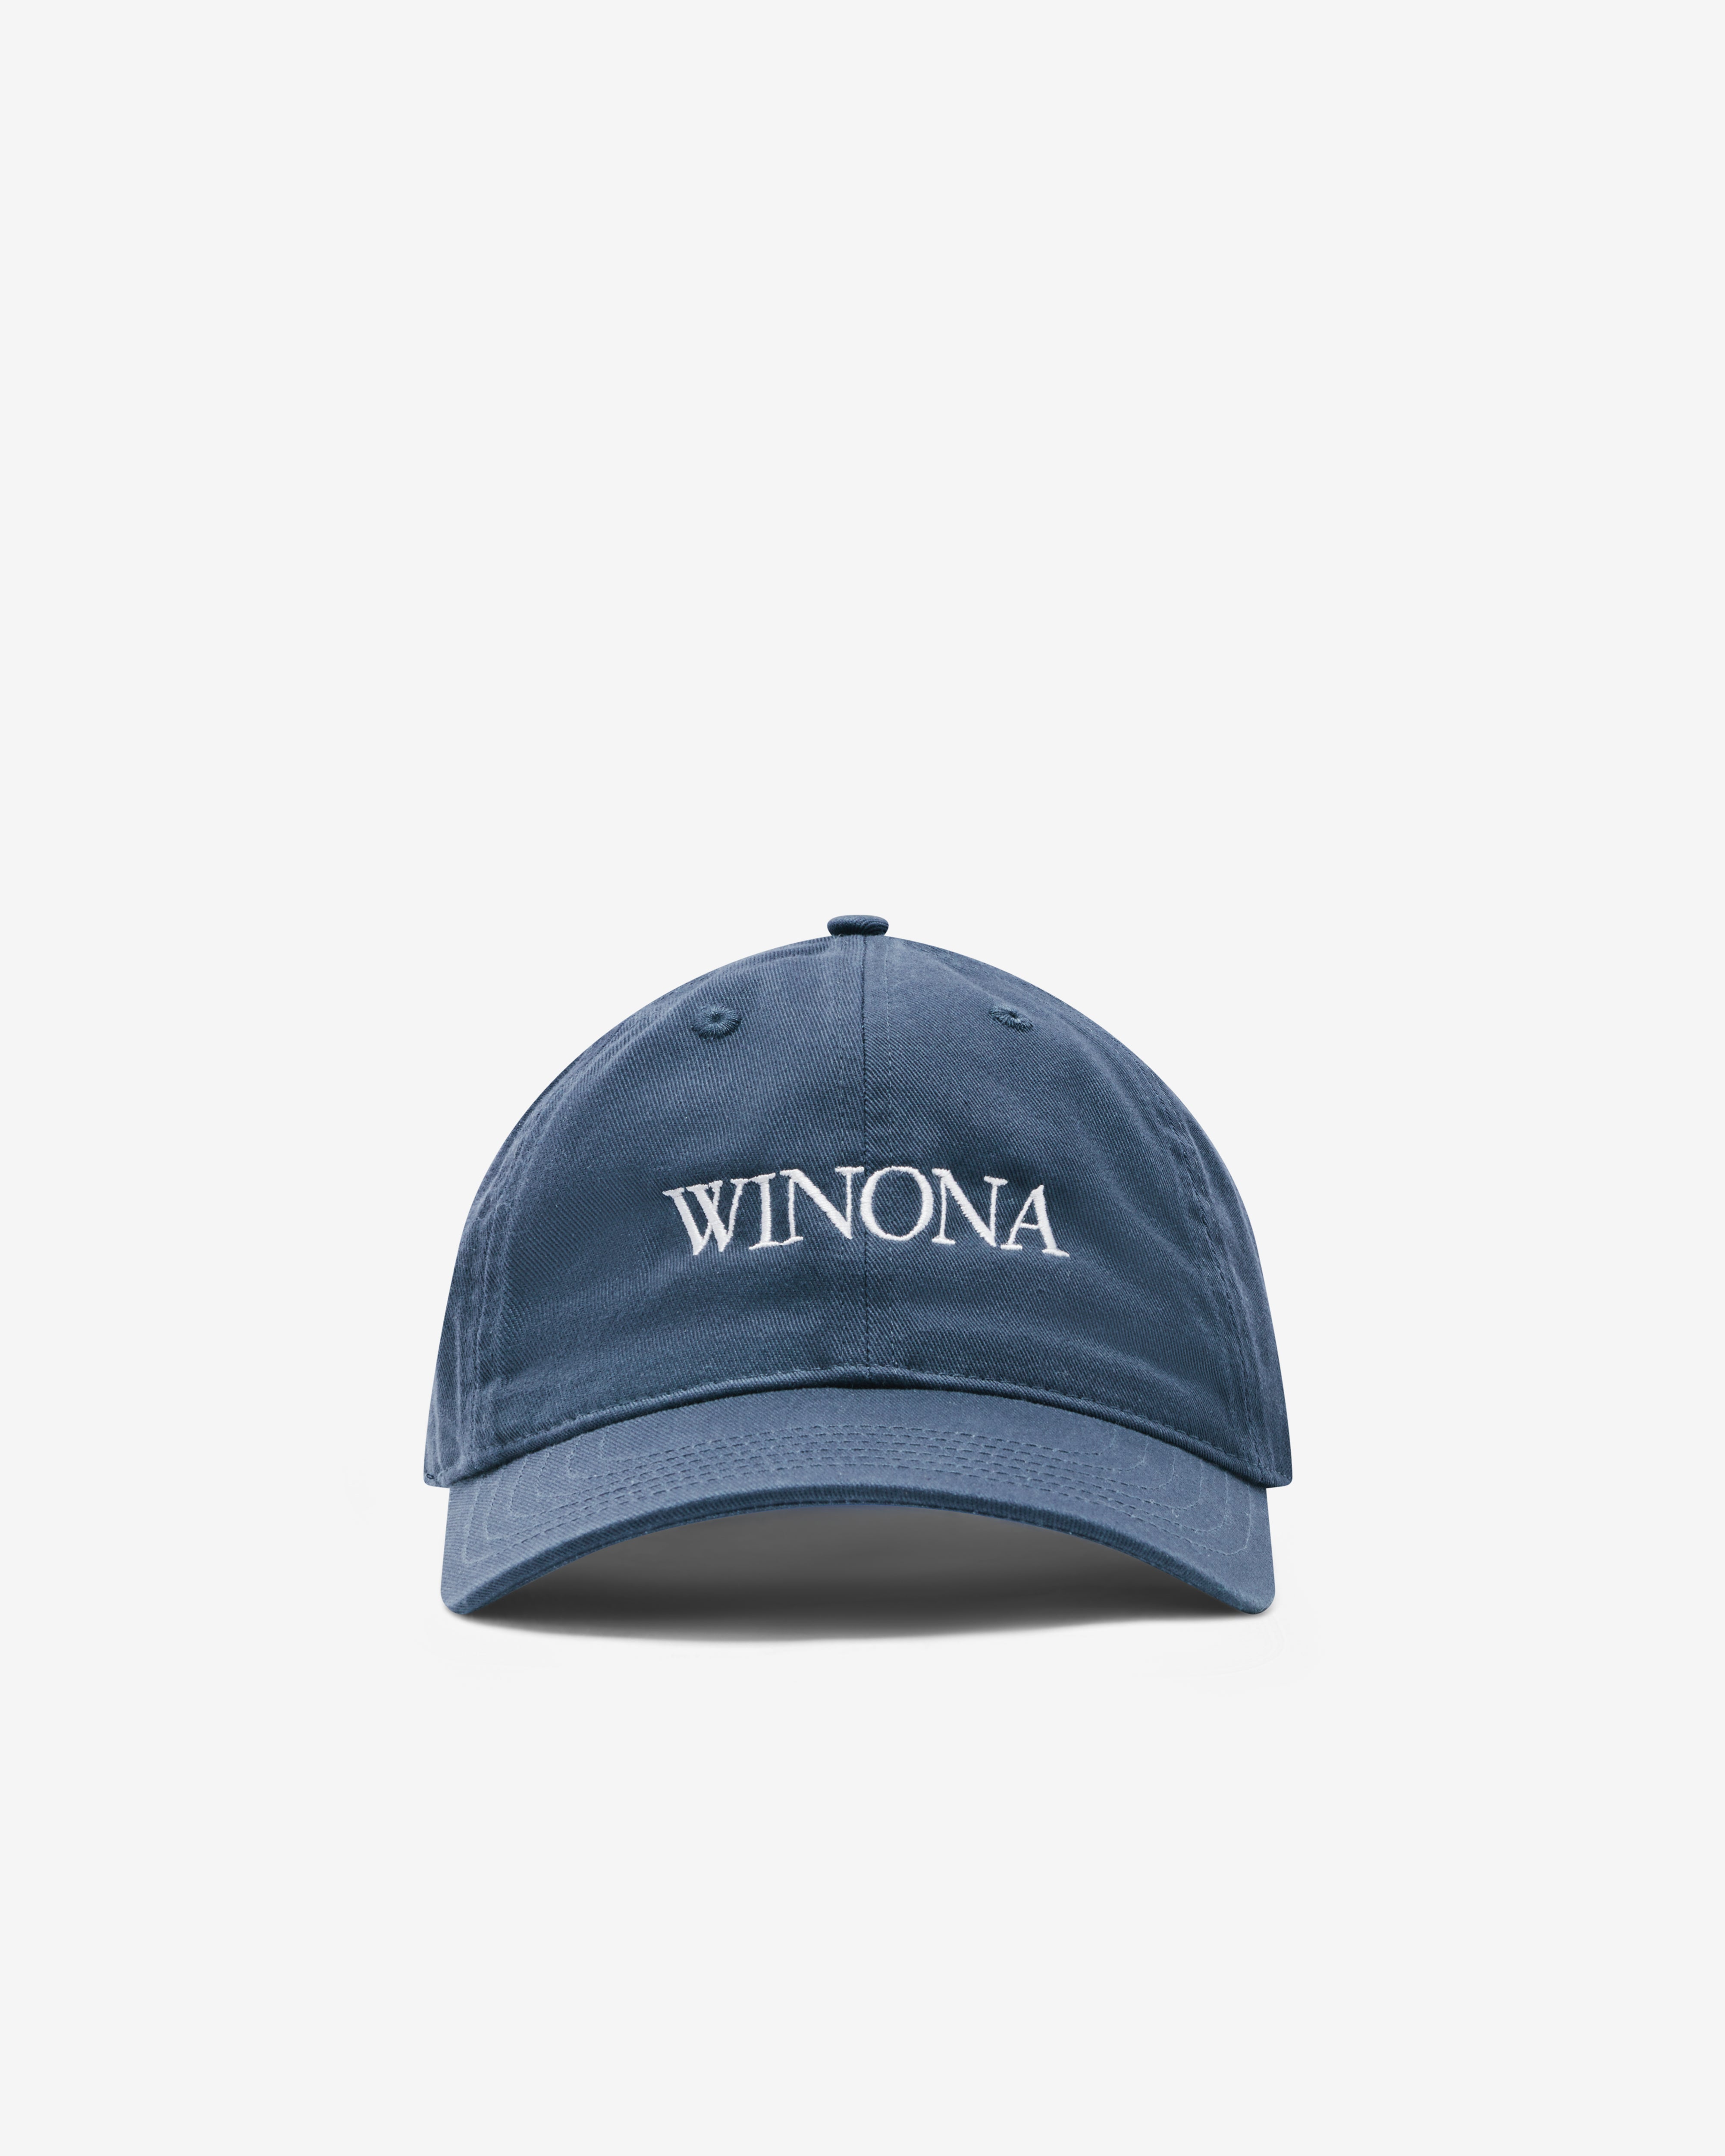 Idea Books - Winona Hat - (Navy)